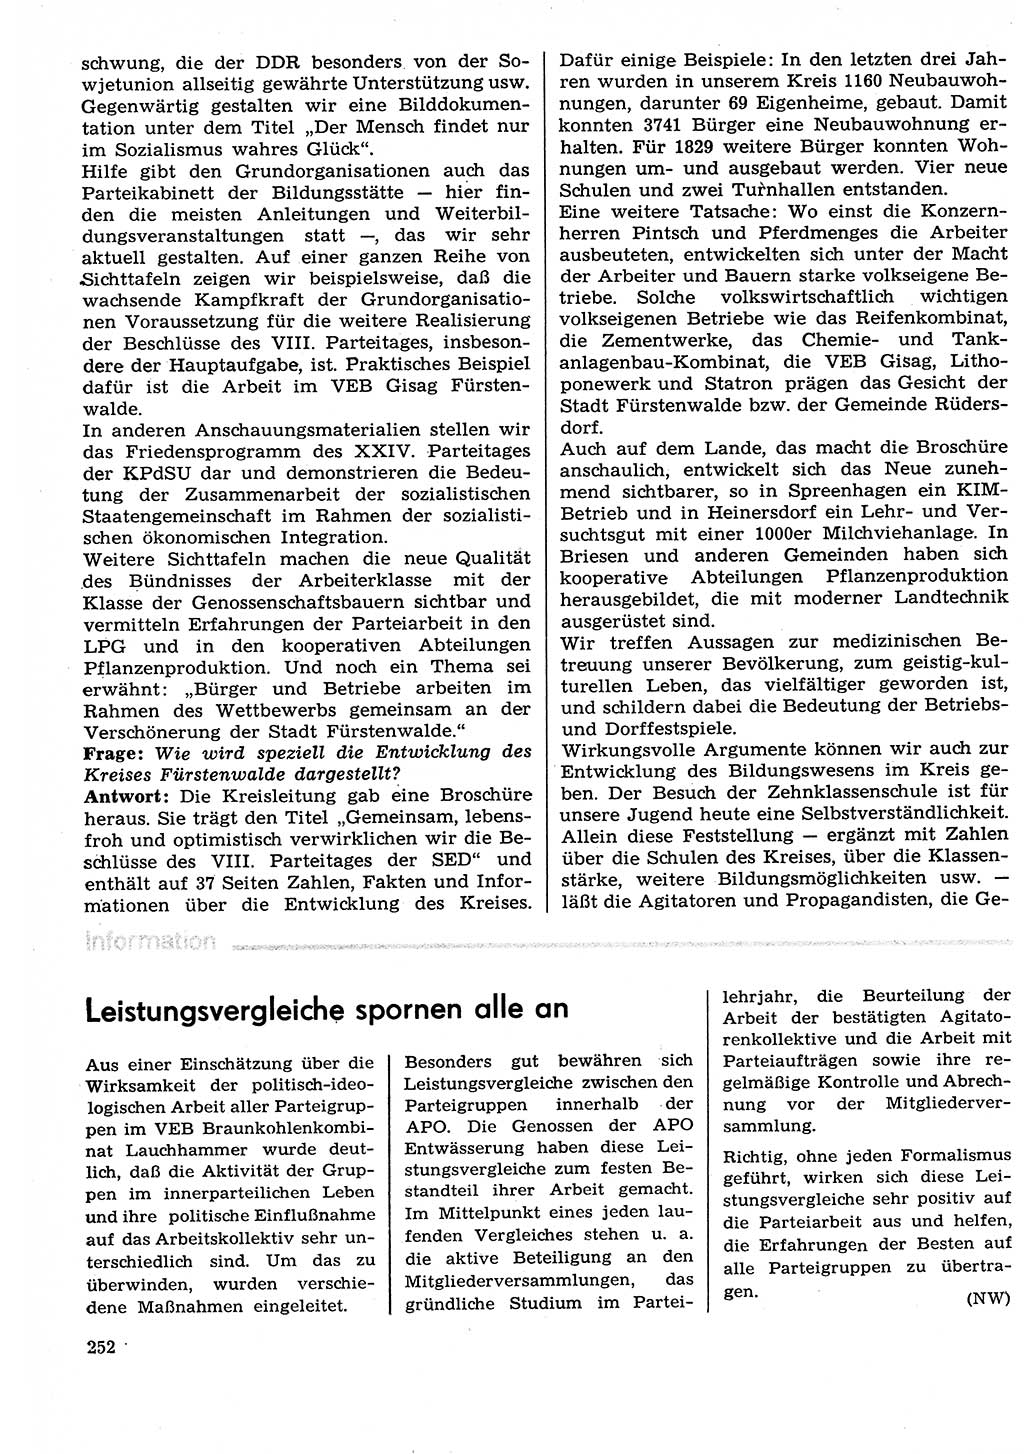 Neuer Weg (NW), Organ des Zentralkomitees (ZK) der SED (Sozialistische Einheitspartei Deutschlands) für Fragen des Parteilebens, 29. Jahrgang [Deutsche Demokratische Republik (DDR)] 1974, Seite 252 (NW ZK SED DDR 1974, S. 252)